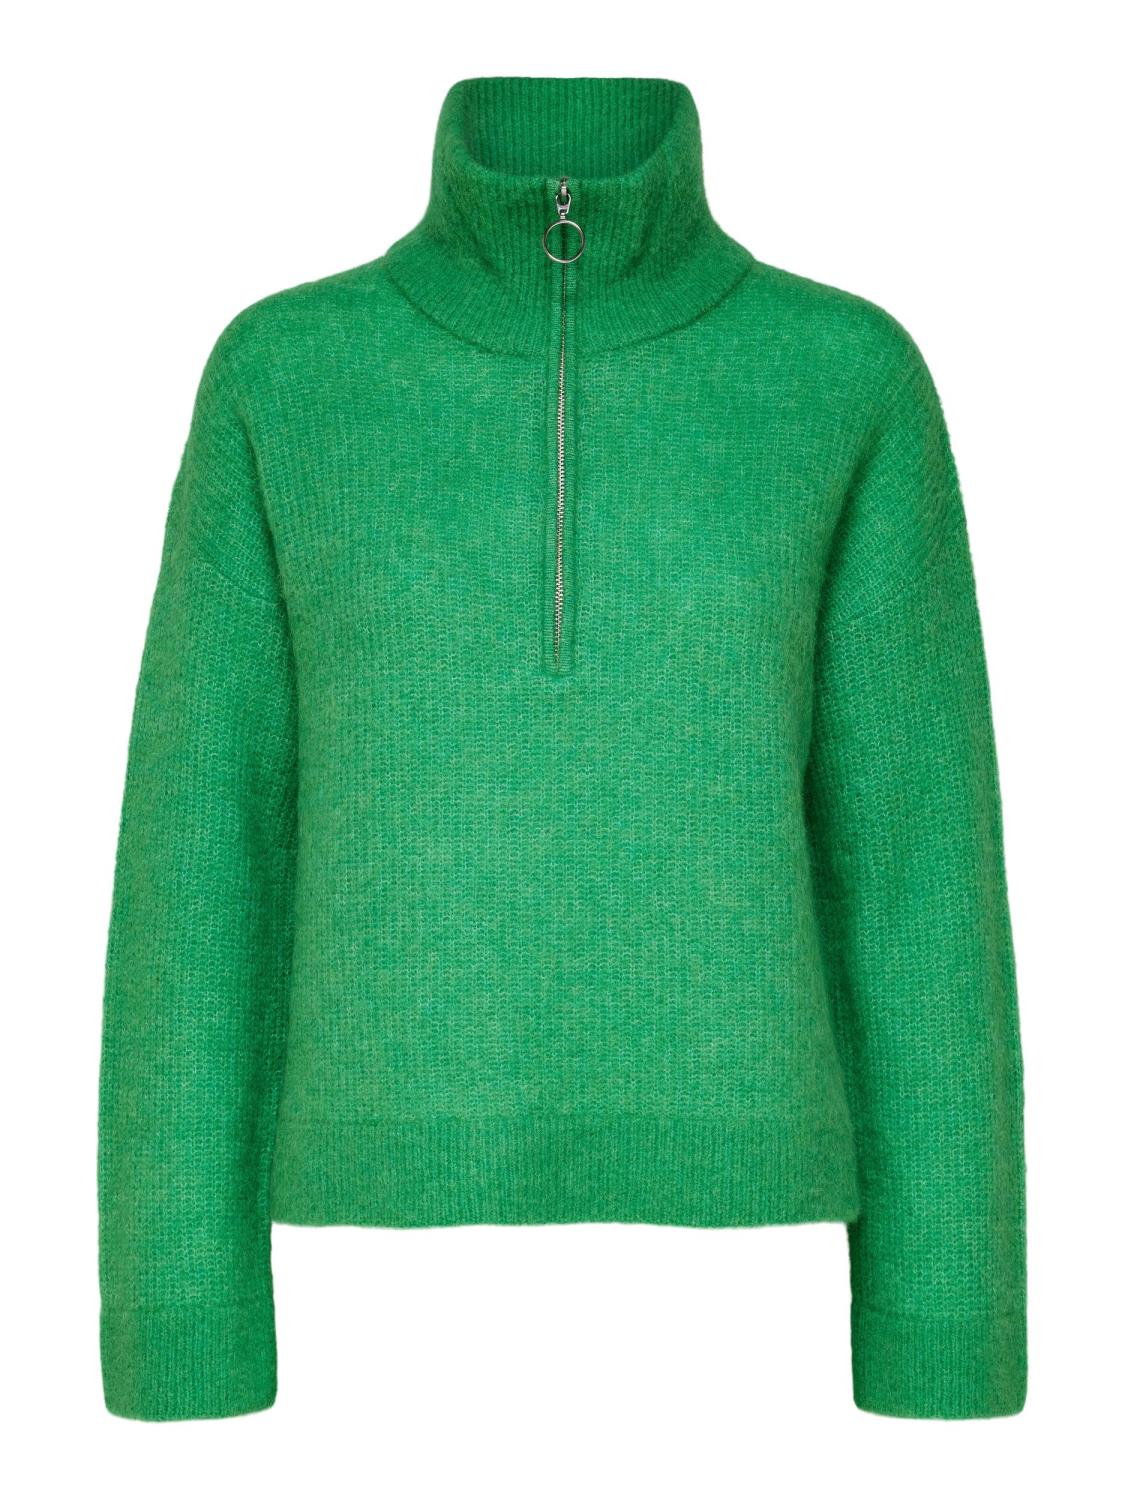 SLFSIA ls knit half zipper Green